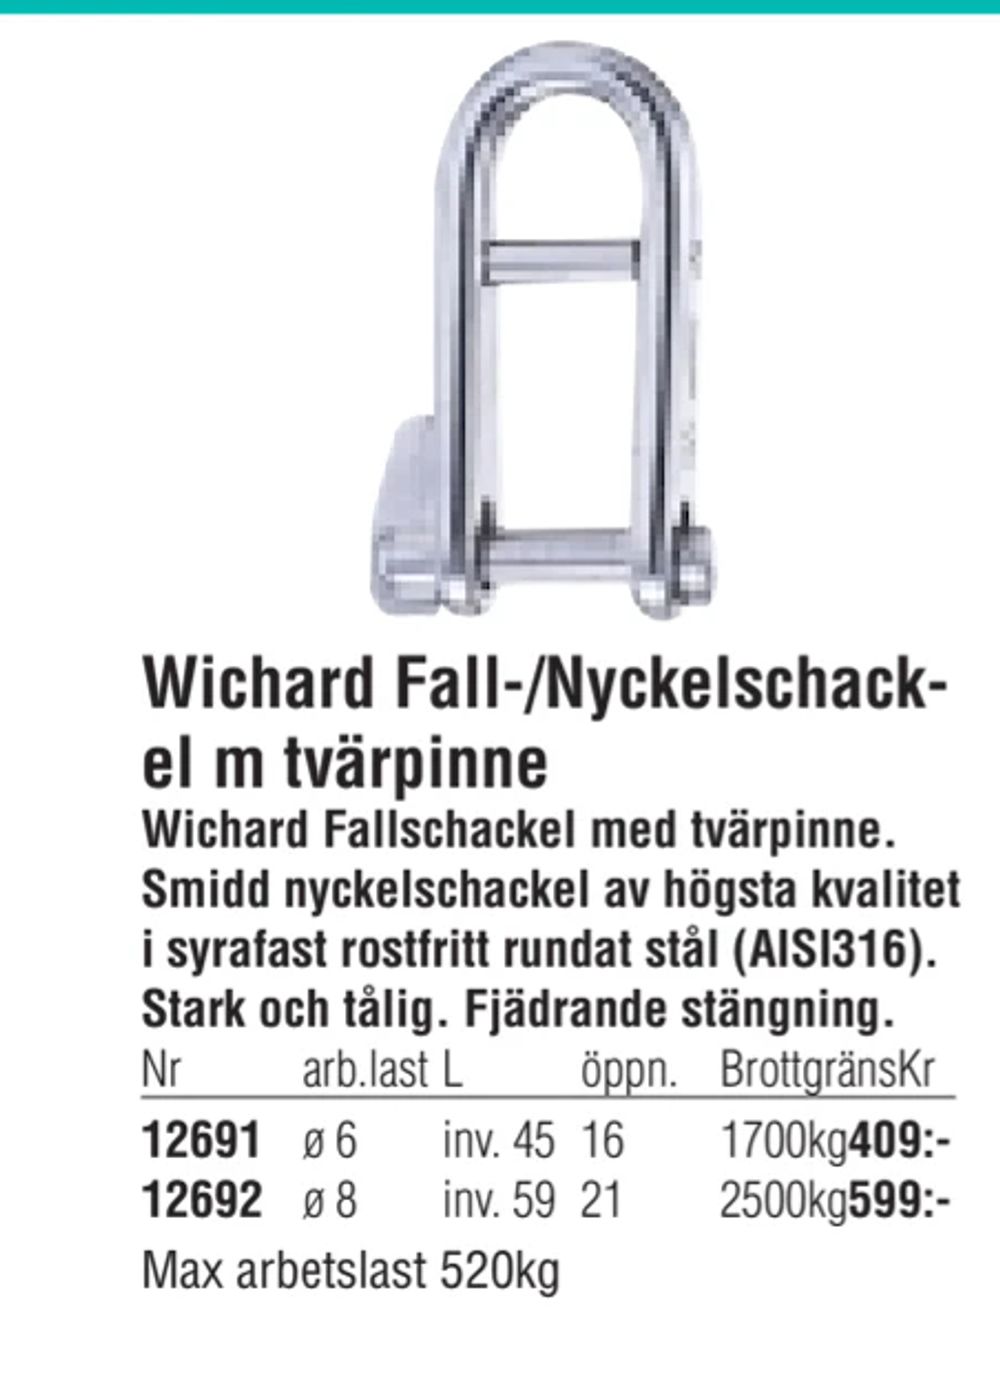 Erbjudanden på Wichard Fall-/Nyckelschackel m tvärpinne från Erlandsons Brygga för 409 kr